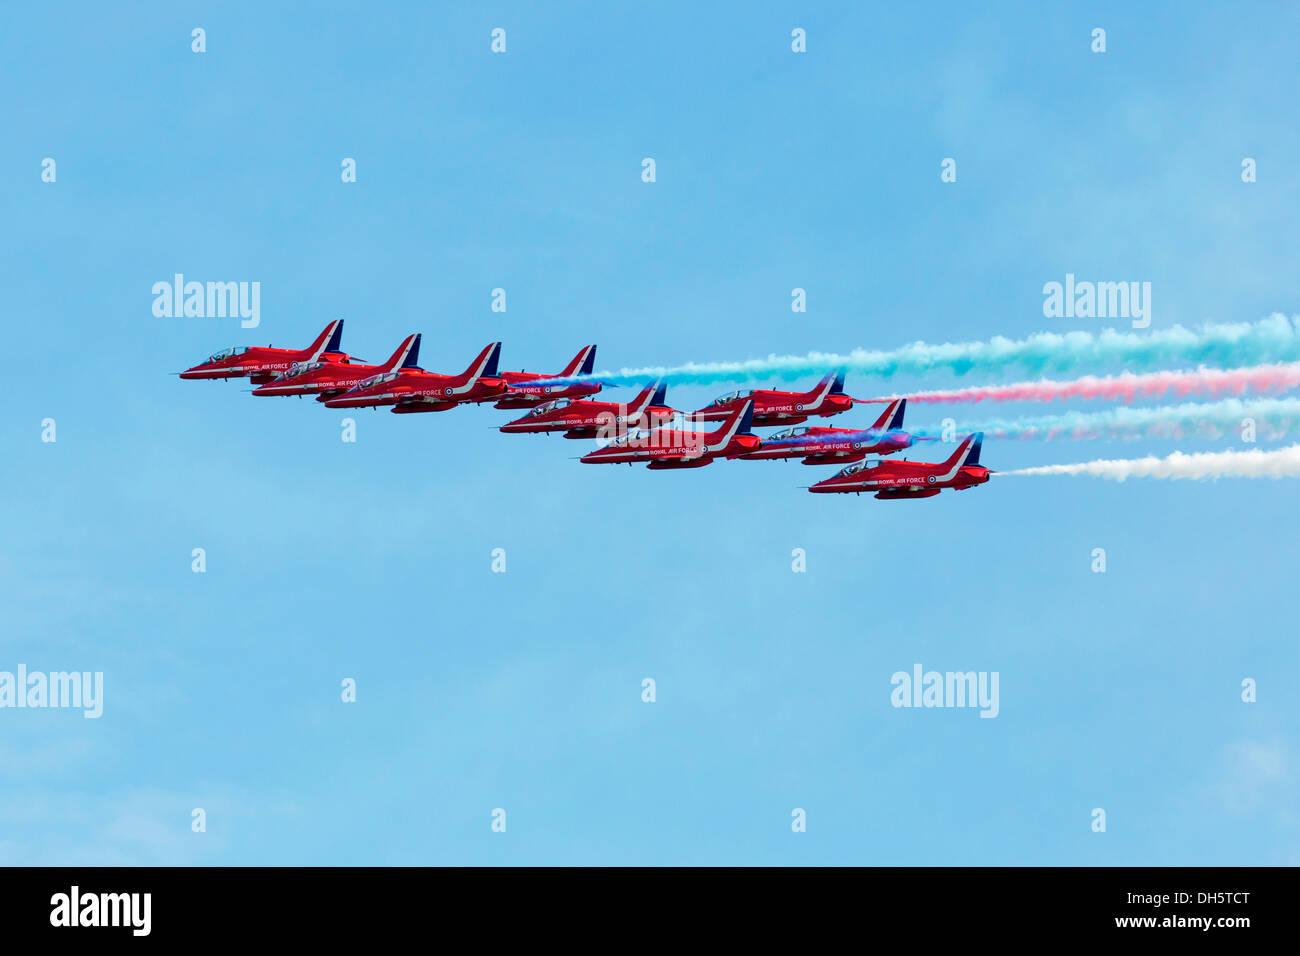 Le frecce rosse display team volare in formazione. Foto Stock